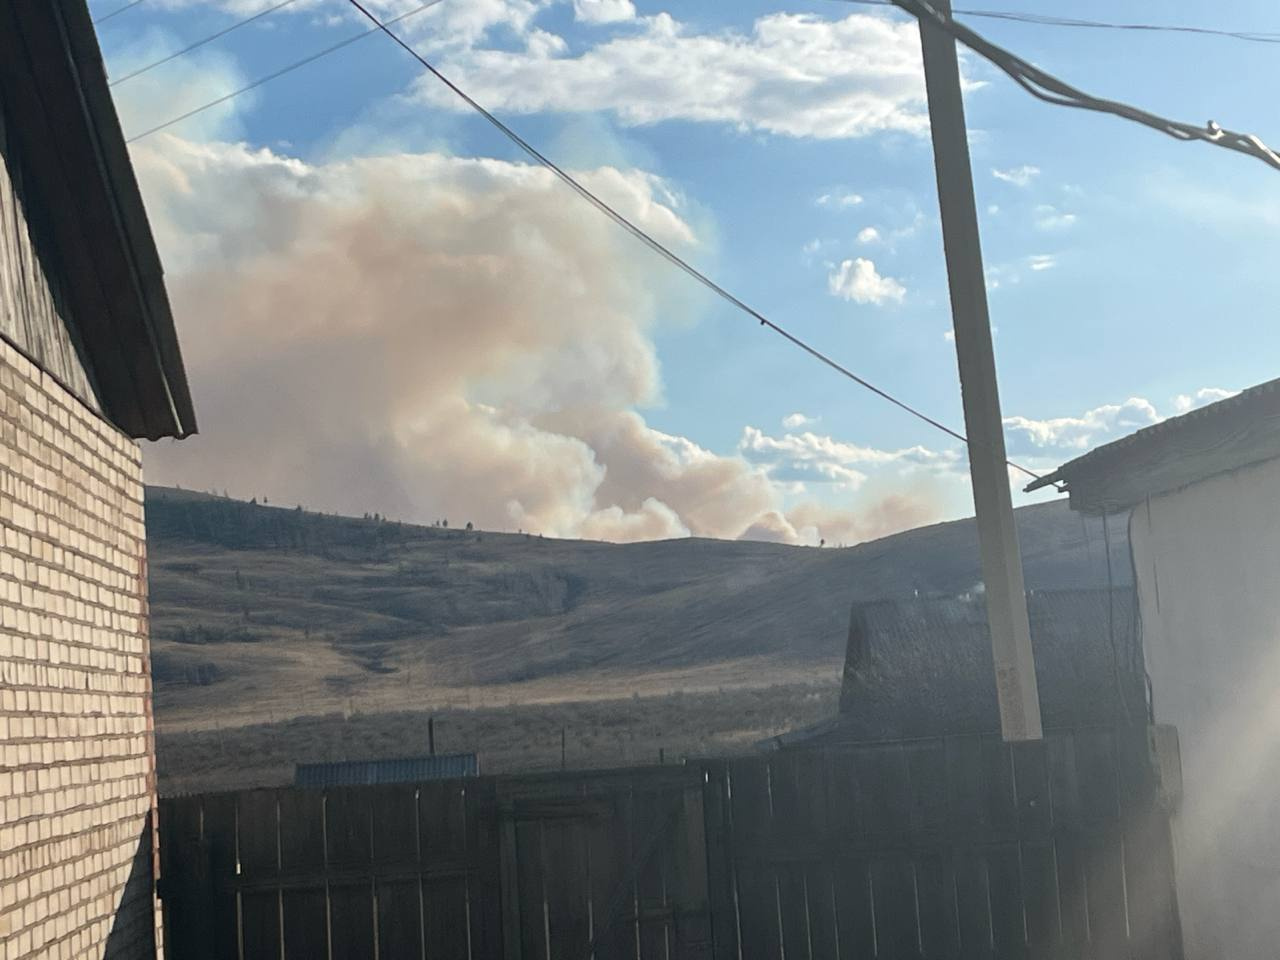 Пожар разгорелся в 30 км от села Акша в Забайкалье